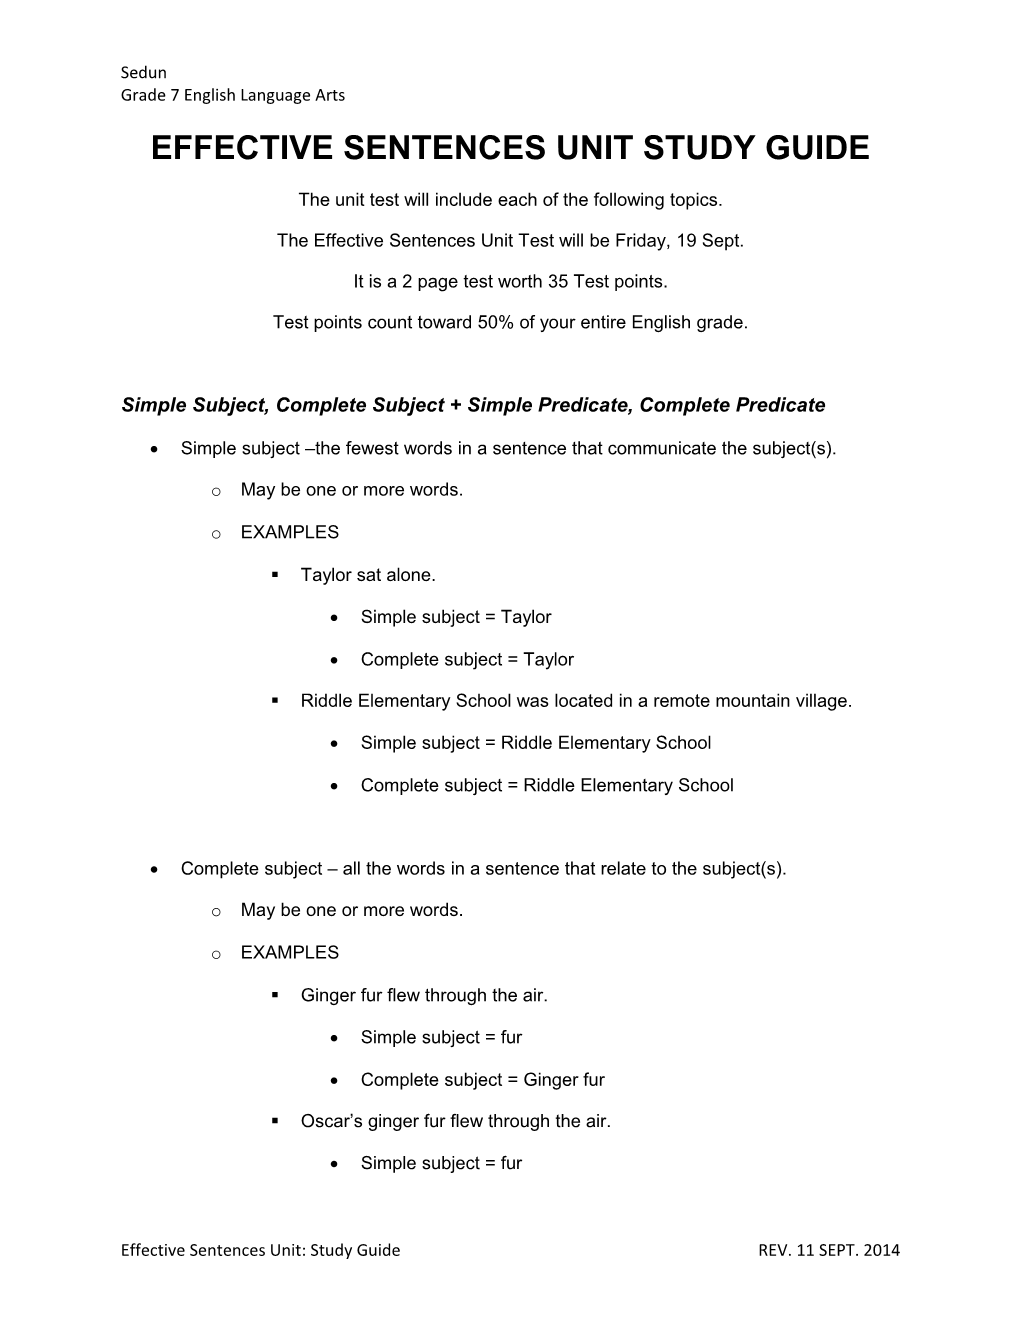 Effective Sentences Unit Study Guide